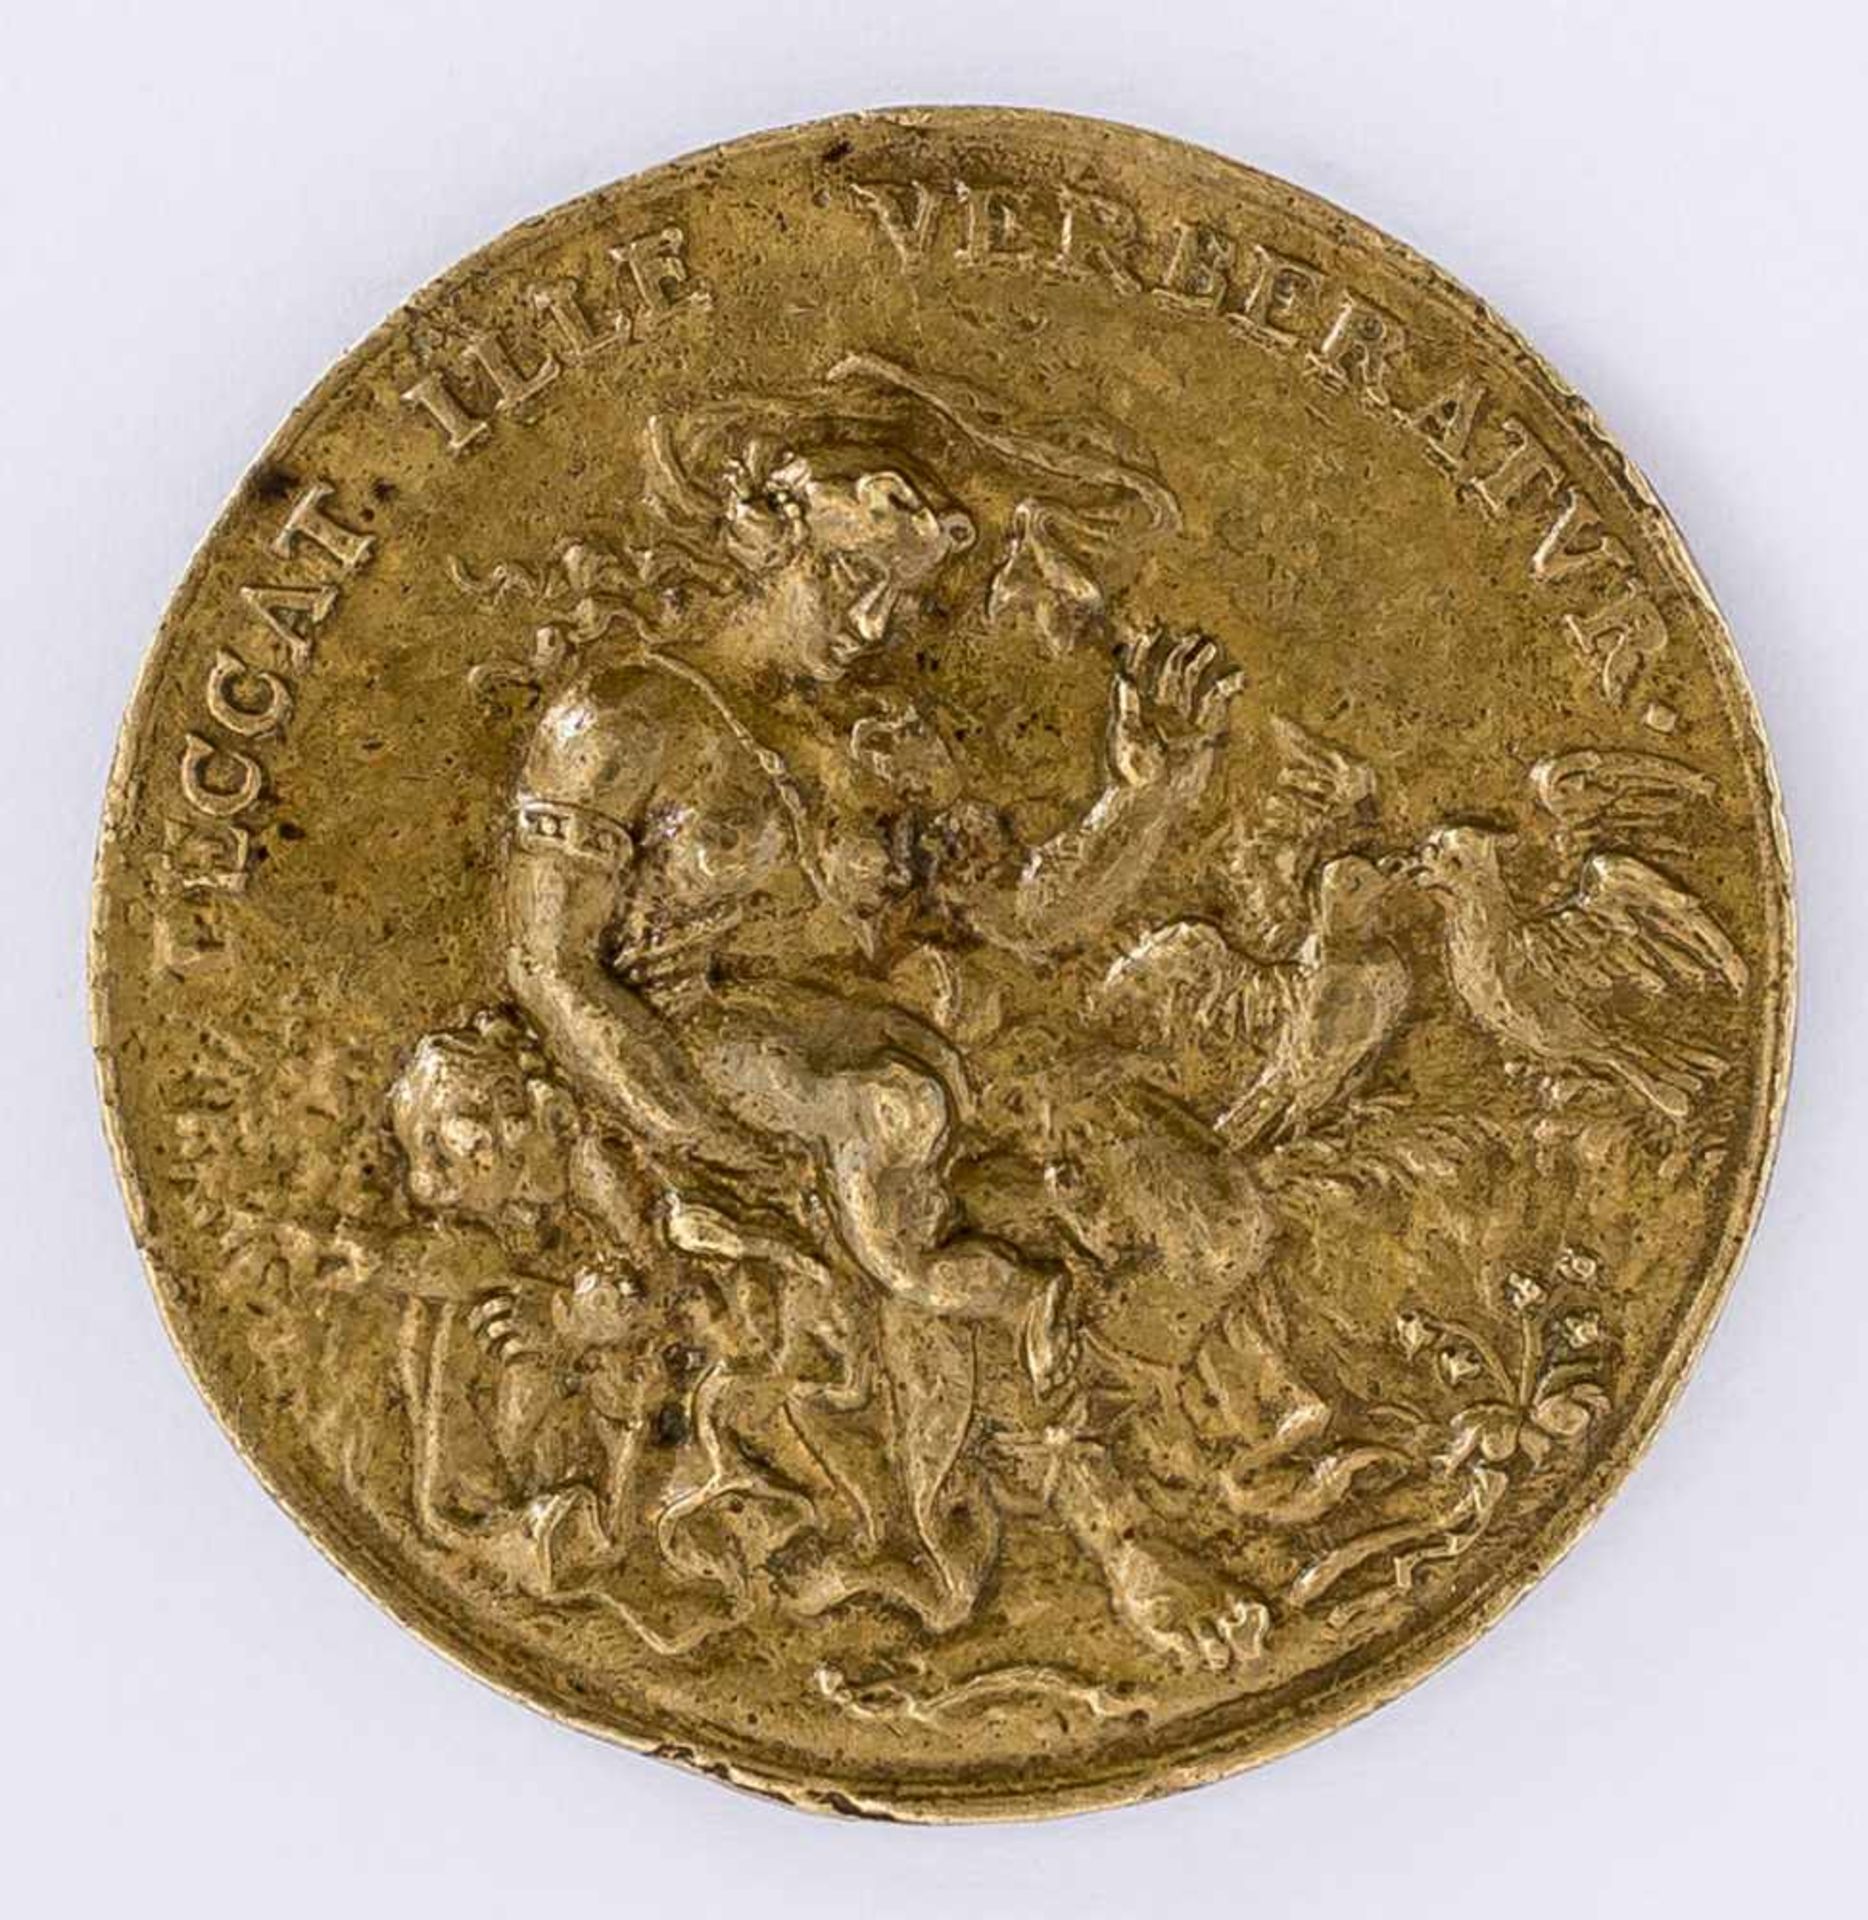 Venus und Cupido Medaille, wohl 16. / 17. Jh. Durchmesser 4,7 cm Vorderseite: Sitzende Venus schlägt